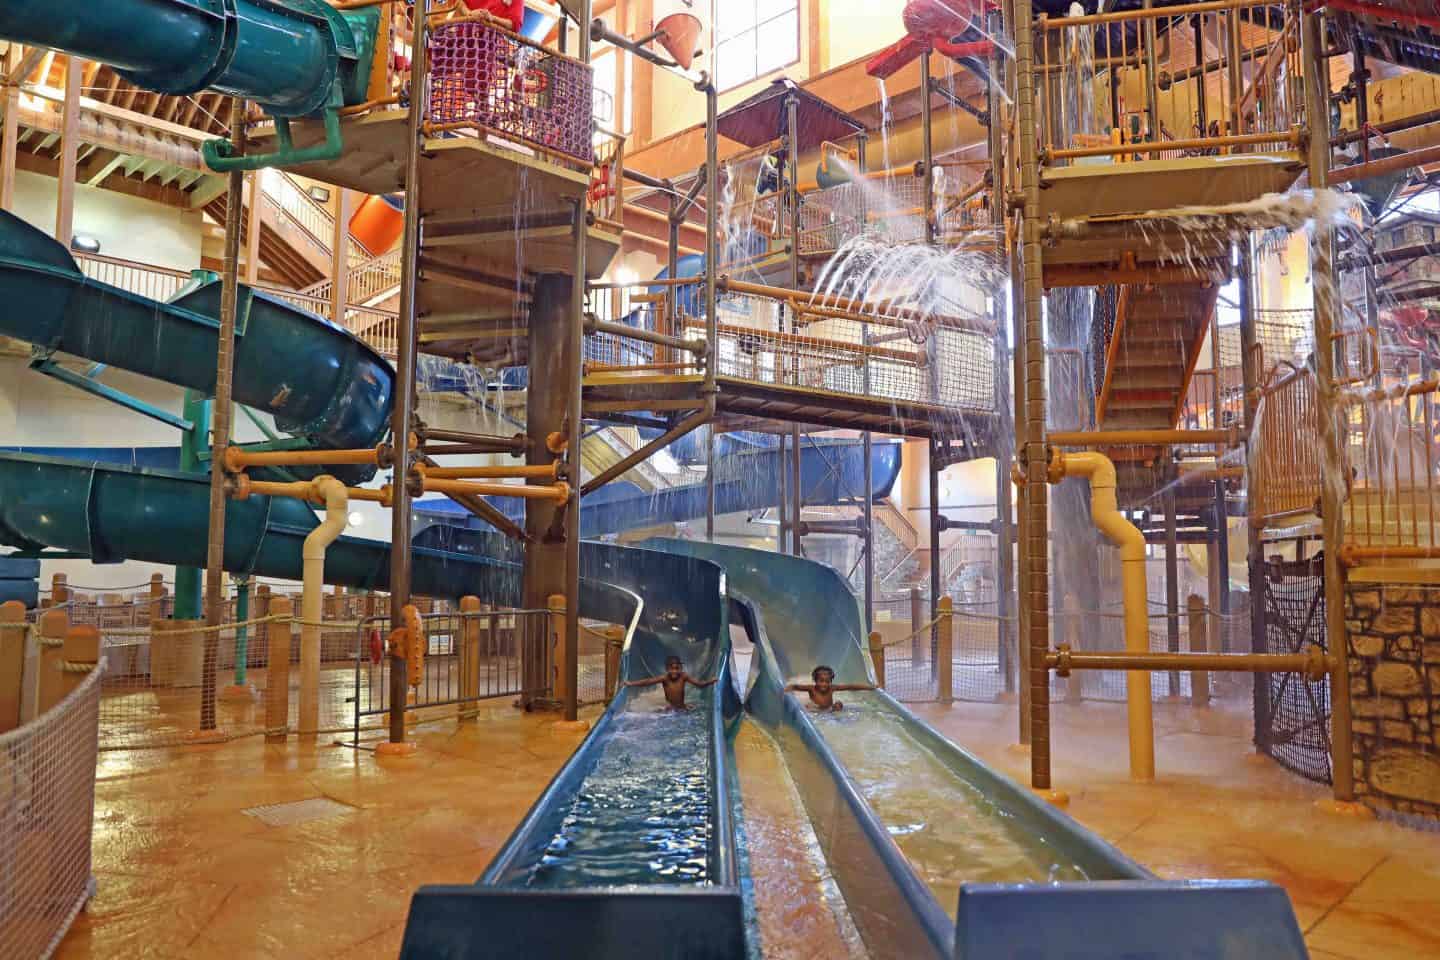 Noah’s Ark Outdoor Water Park & Hotel Resort, Wisconsin Dells post thumbnail image